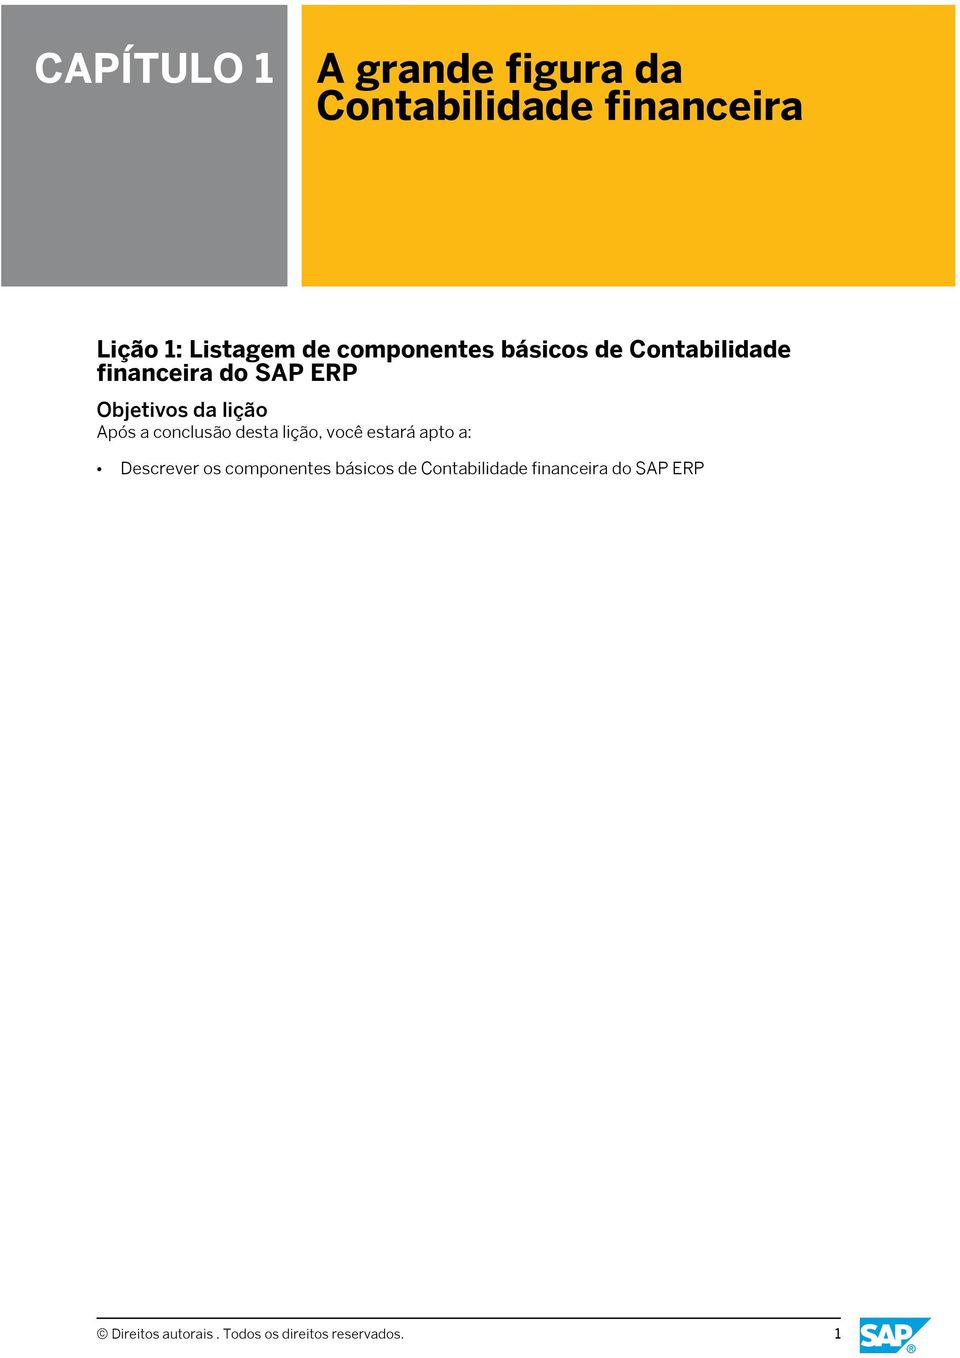 SAP ERP Descrever os componentes básicos de Contabilidade